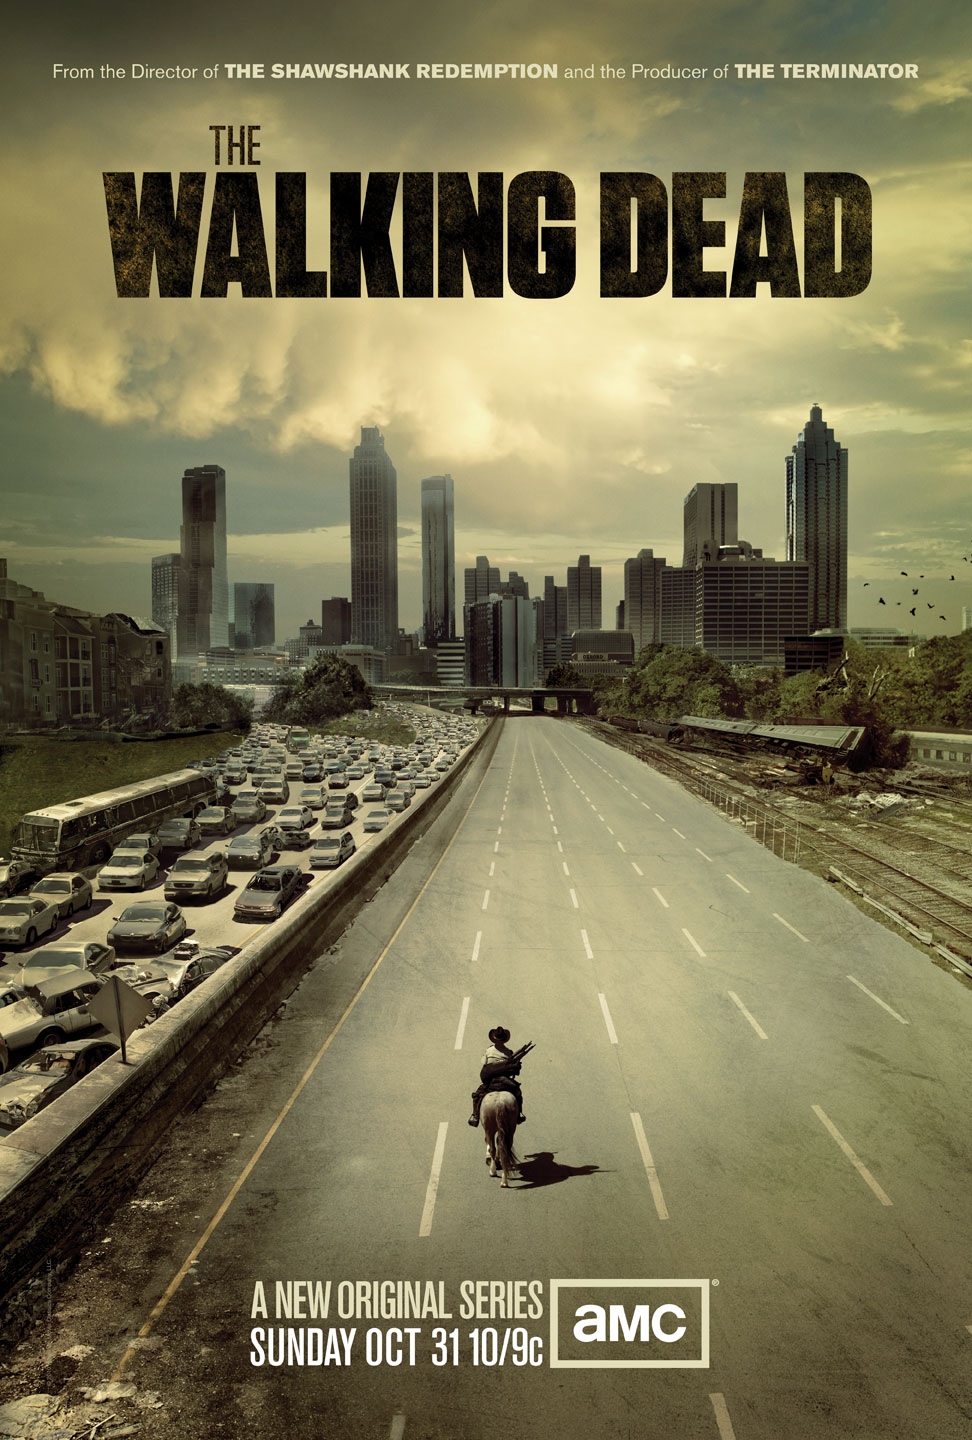 THE WALKING DEAD: SEASON 1 (2010)